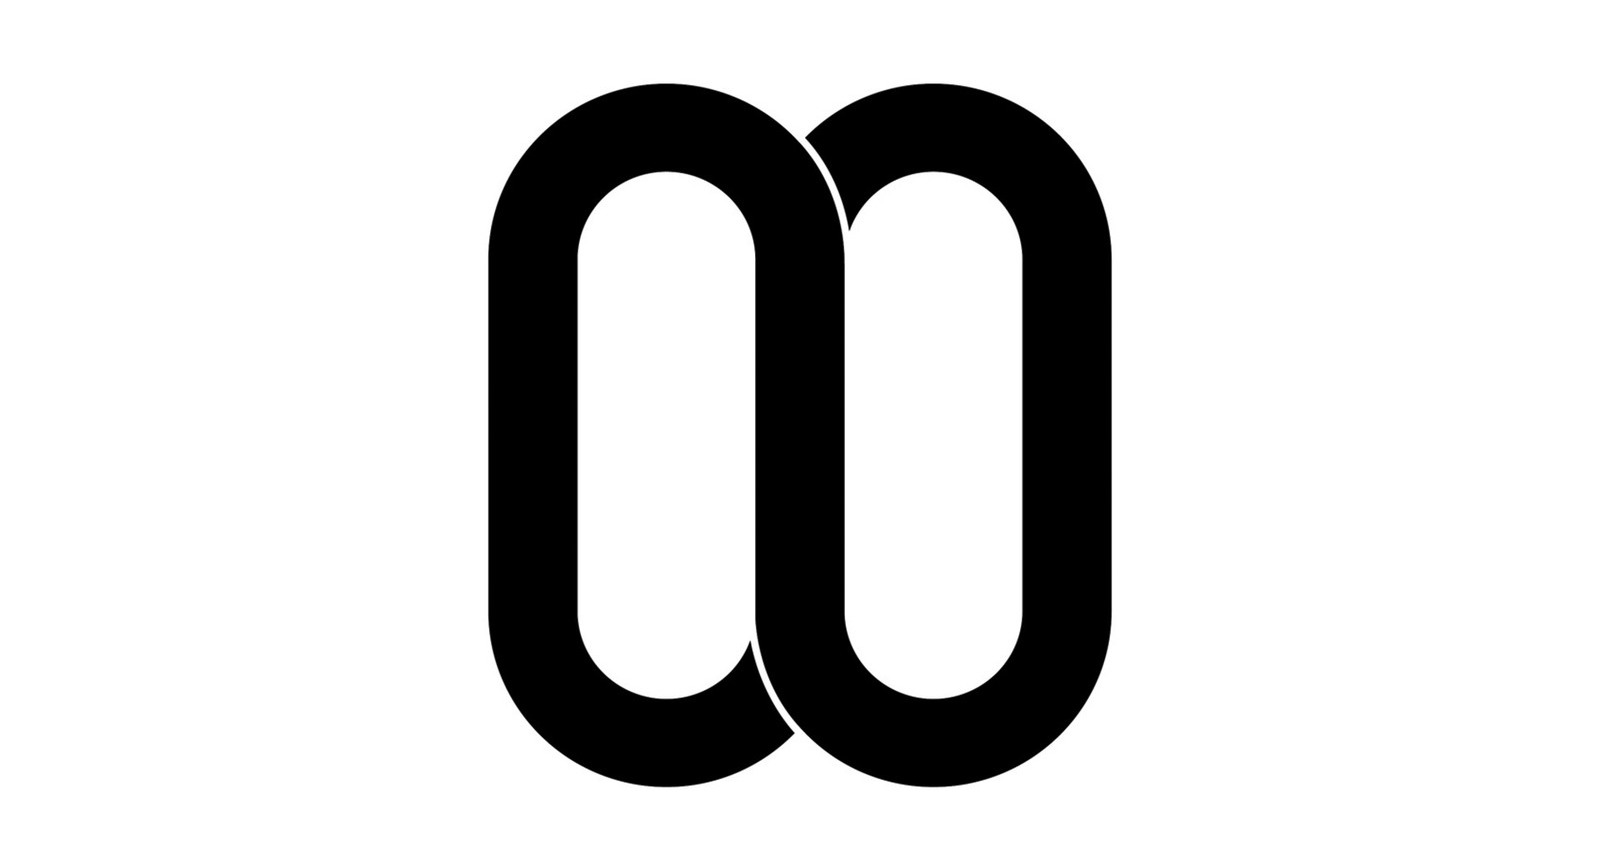 Nooka Logo